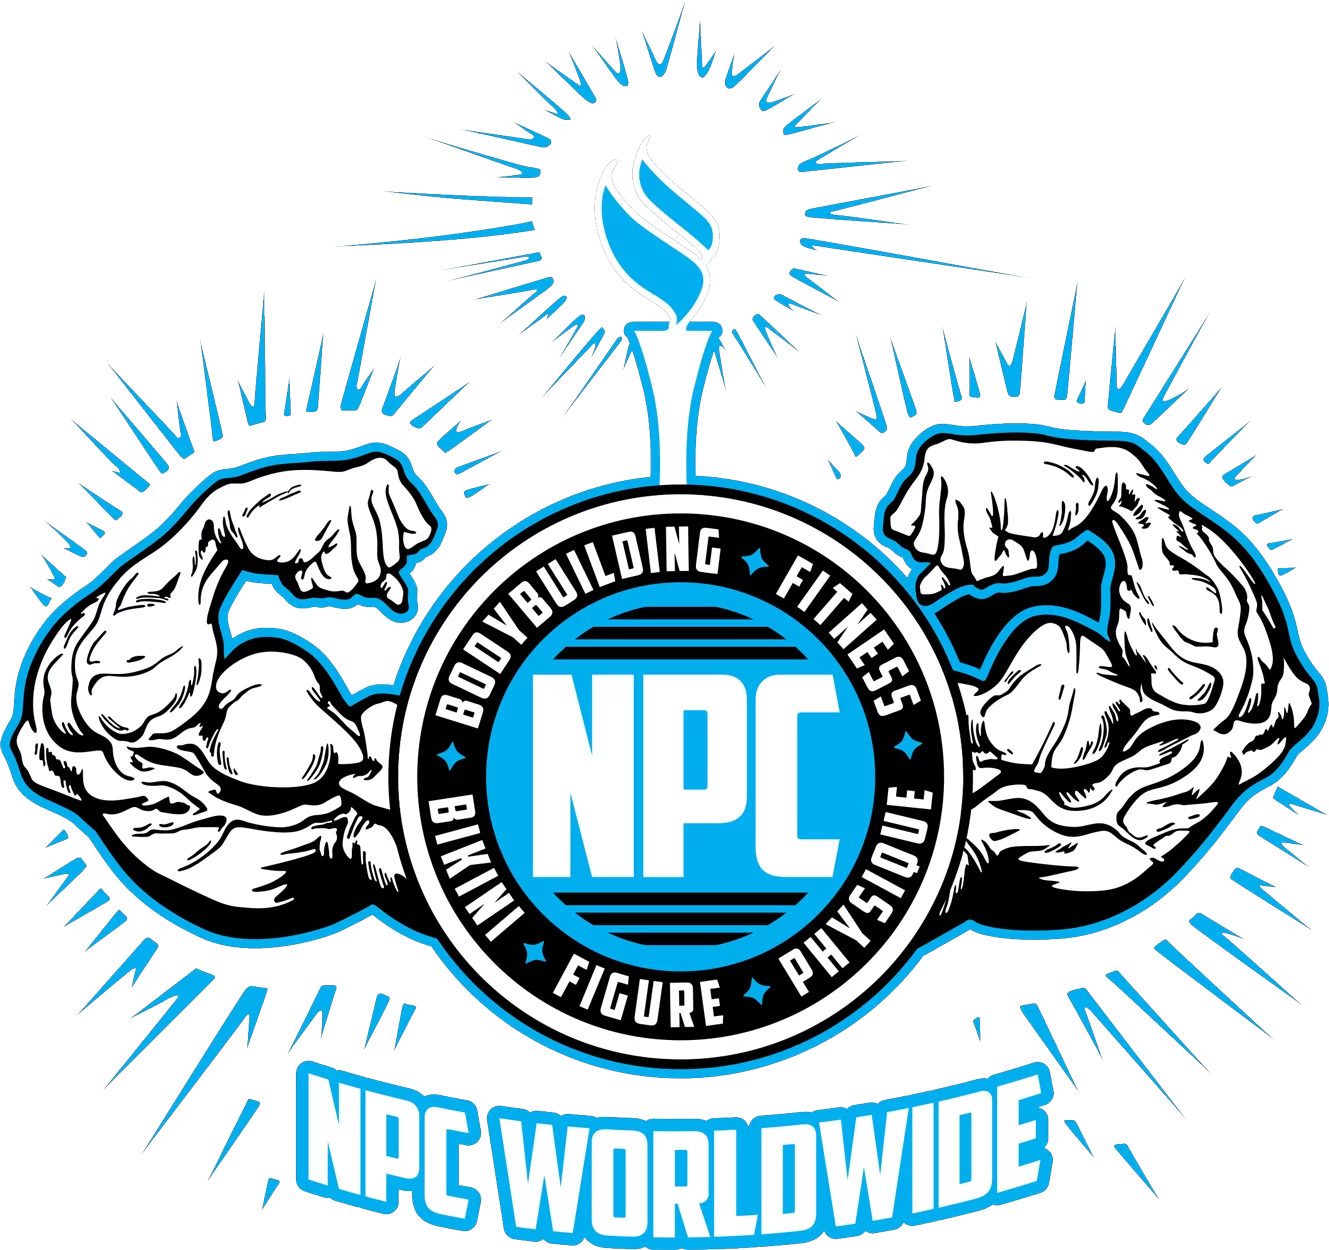 NPC Worldwide